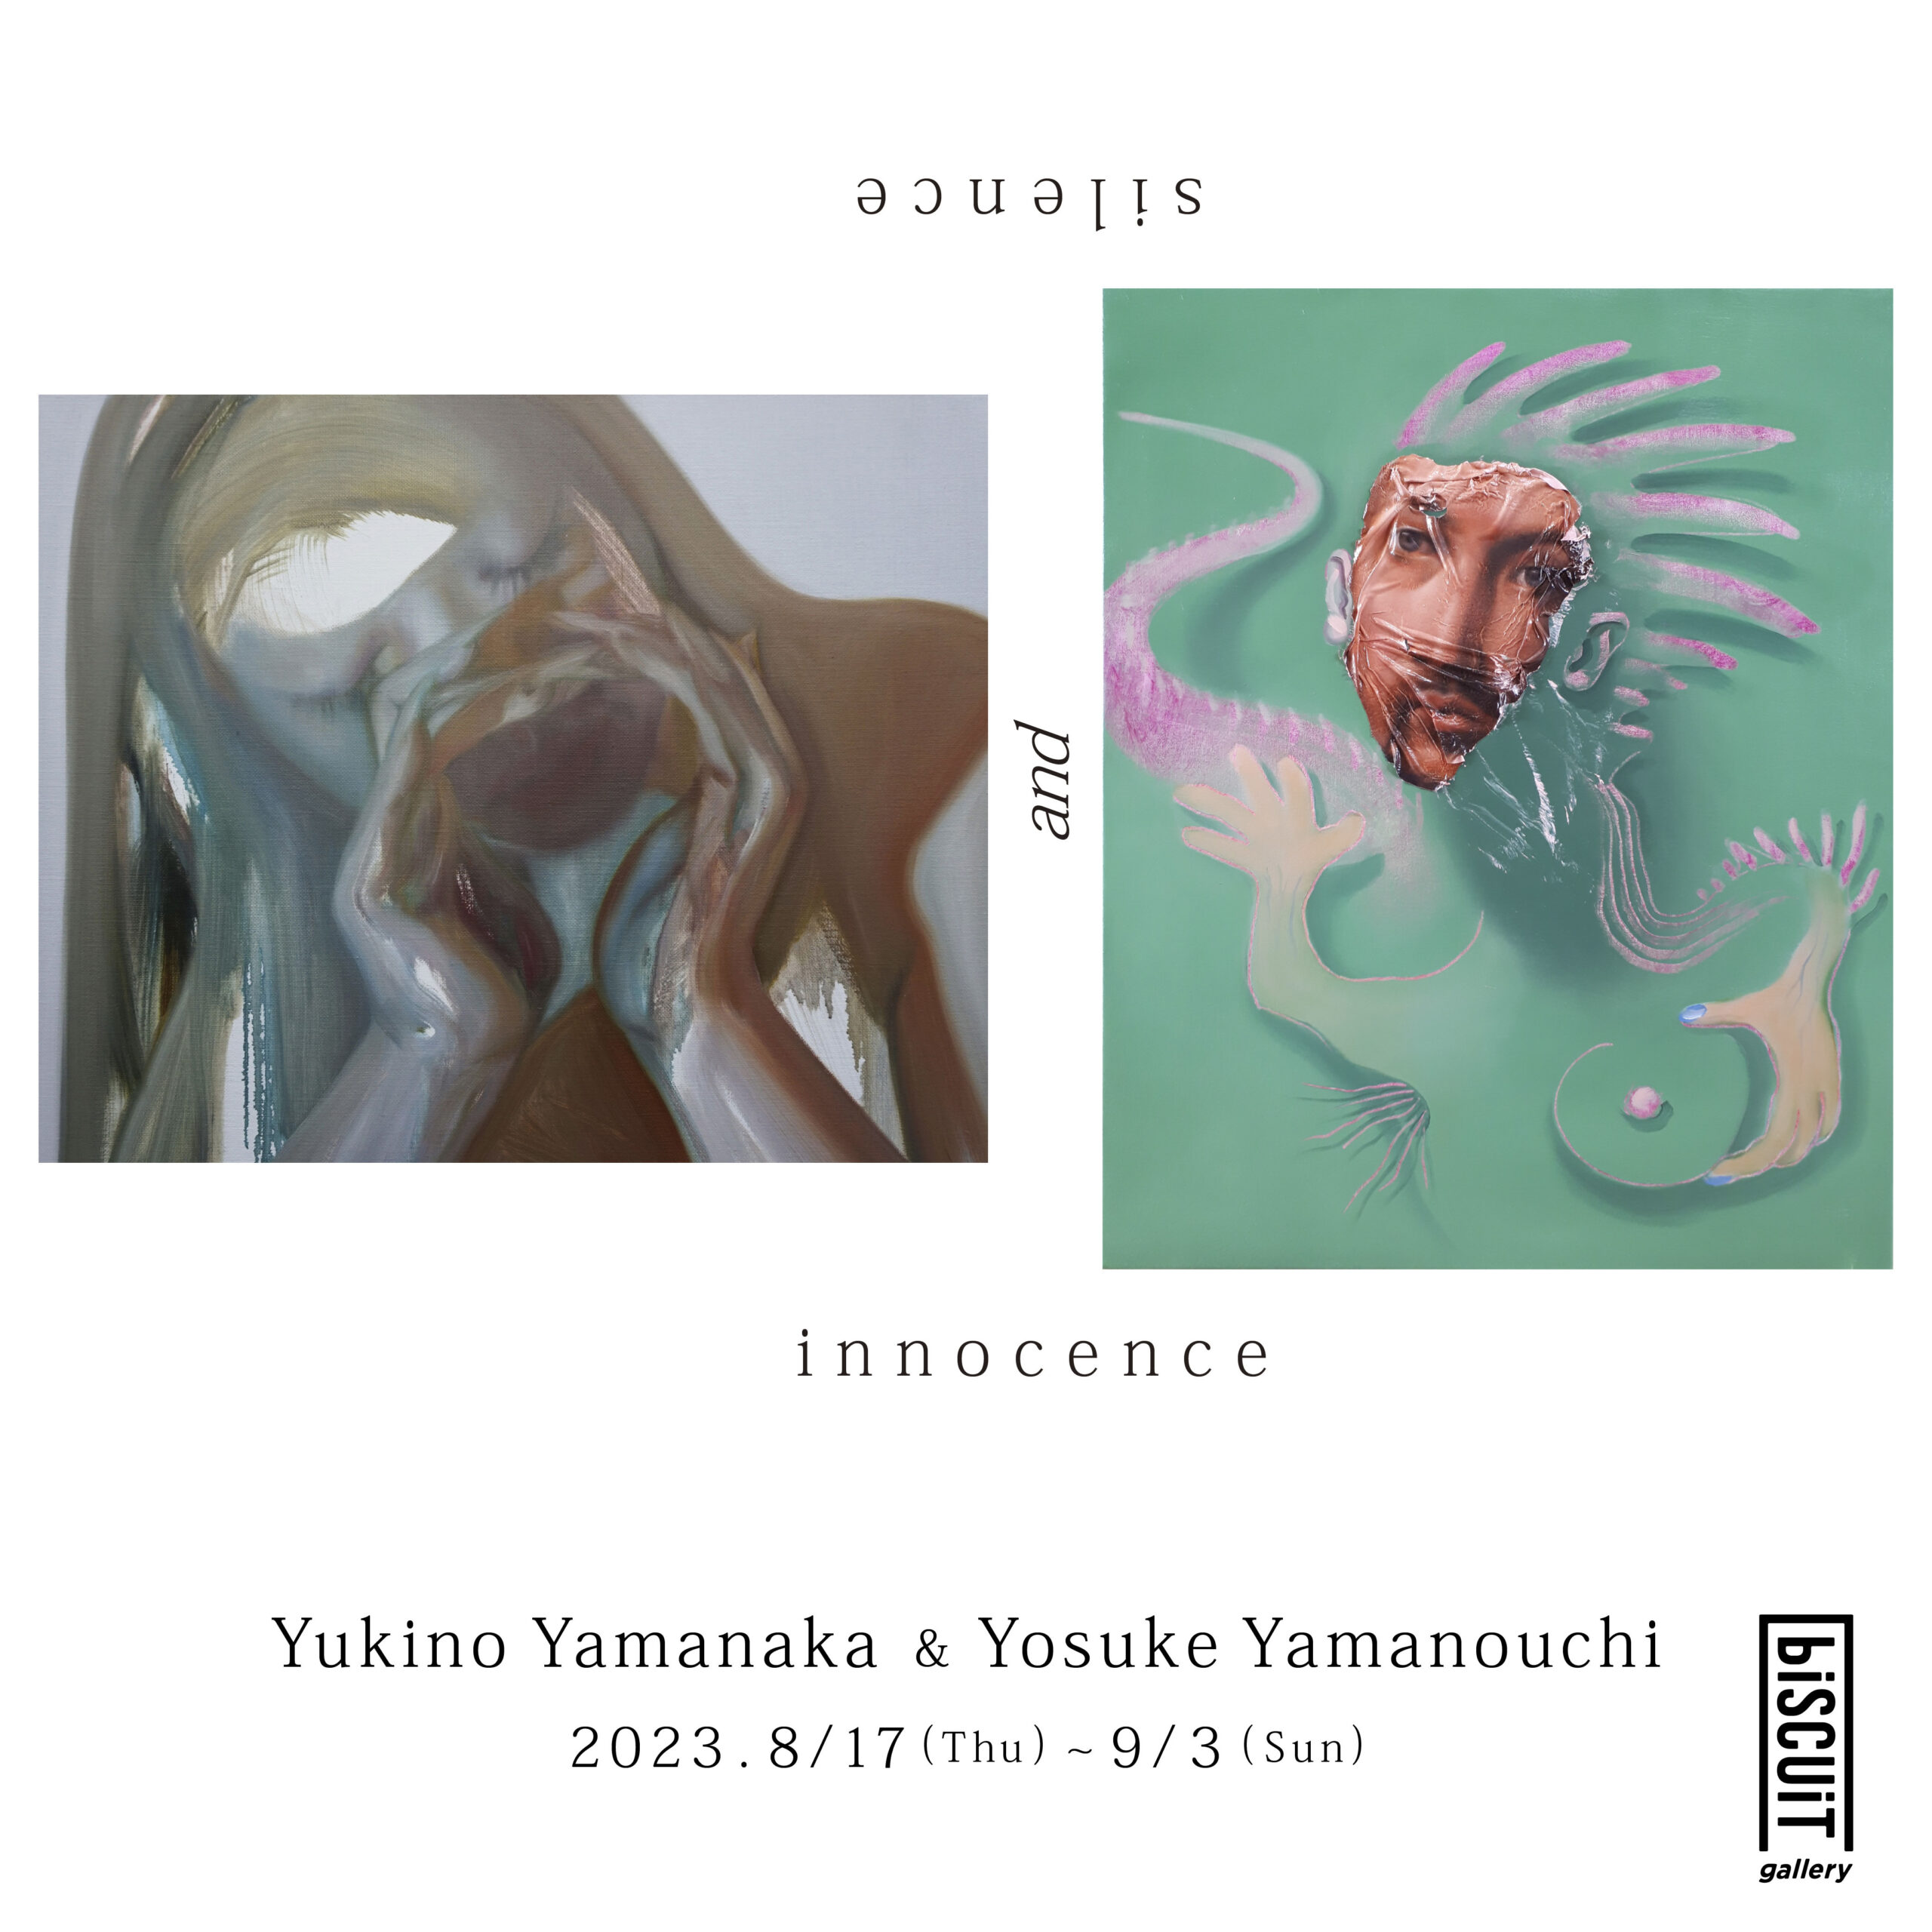 【2人展】山中雪乃×山ノ内陽介「silence and innocence」/ 【Duo Exhibition】Yukino Yamanaka×Yosuke Yamanouchi “silence and innocence”